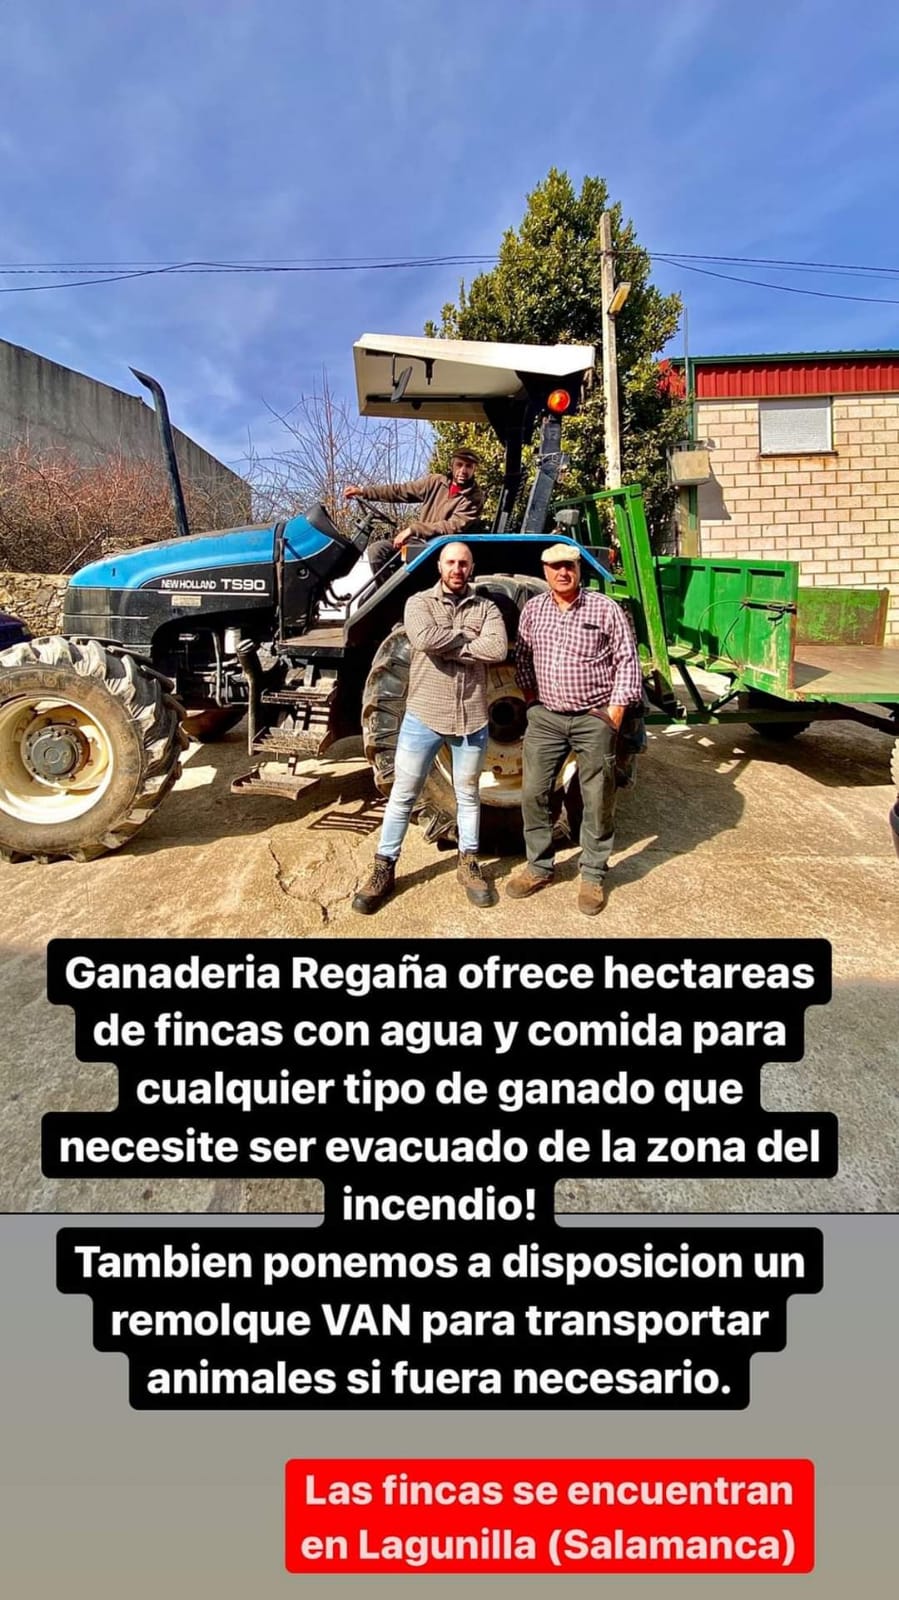 Foto 2 - Lagunilla cede un terreno de 800 hectáreas a los ganaderos afectados por el incendio de Ávila